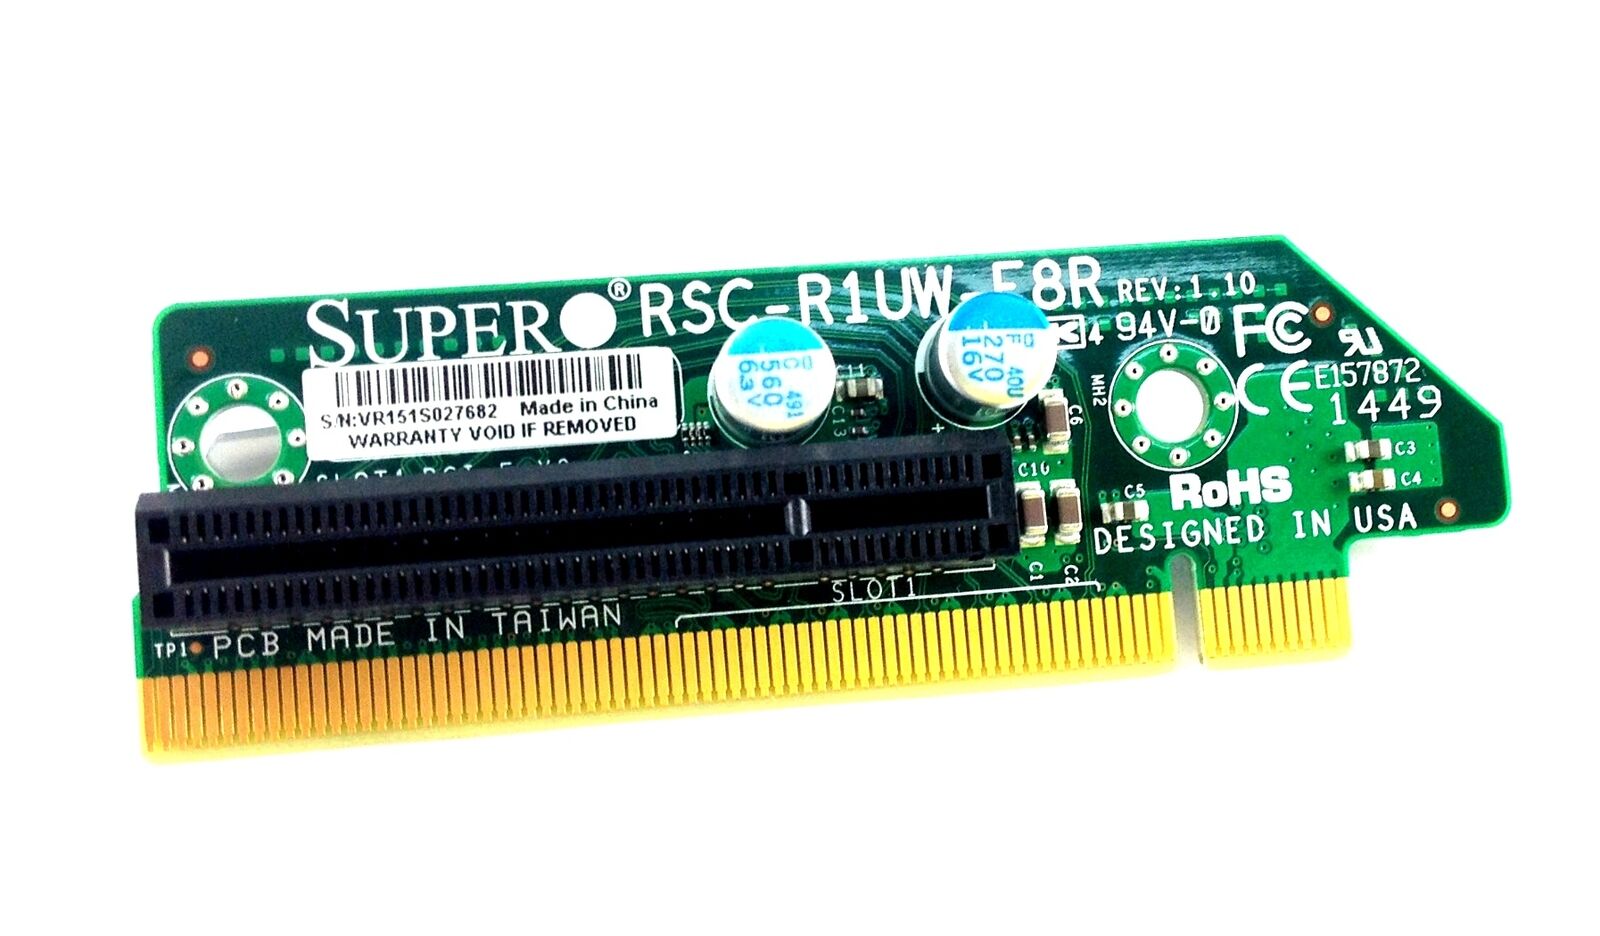 RSC-R1UW-E8R Supermicro 1U Rhs Wio & PCI-Express X 8 Riser Card 